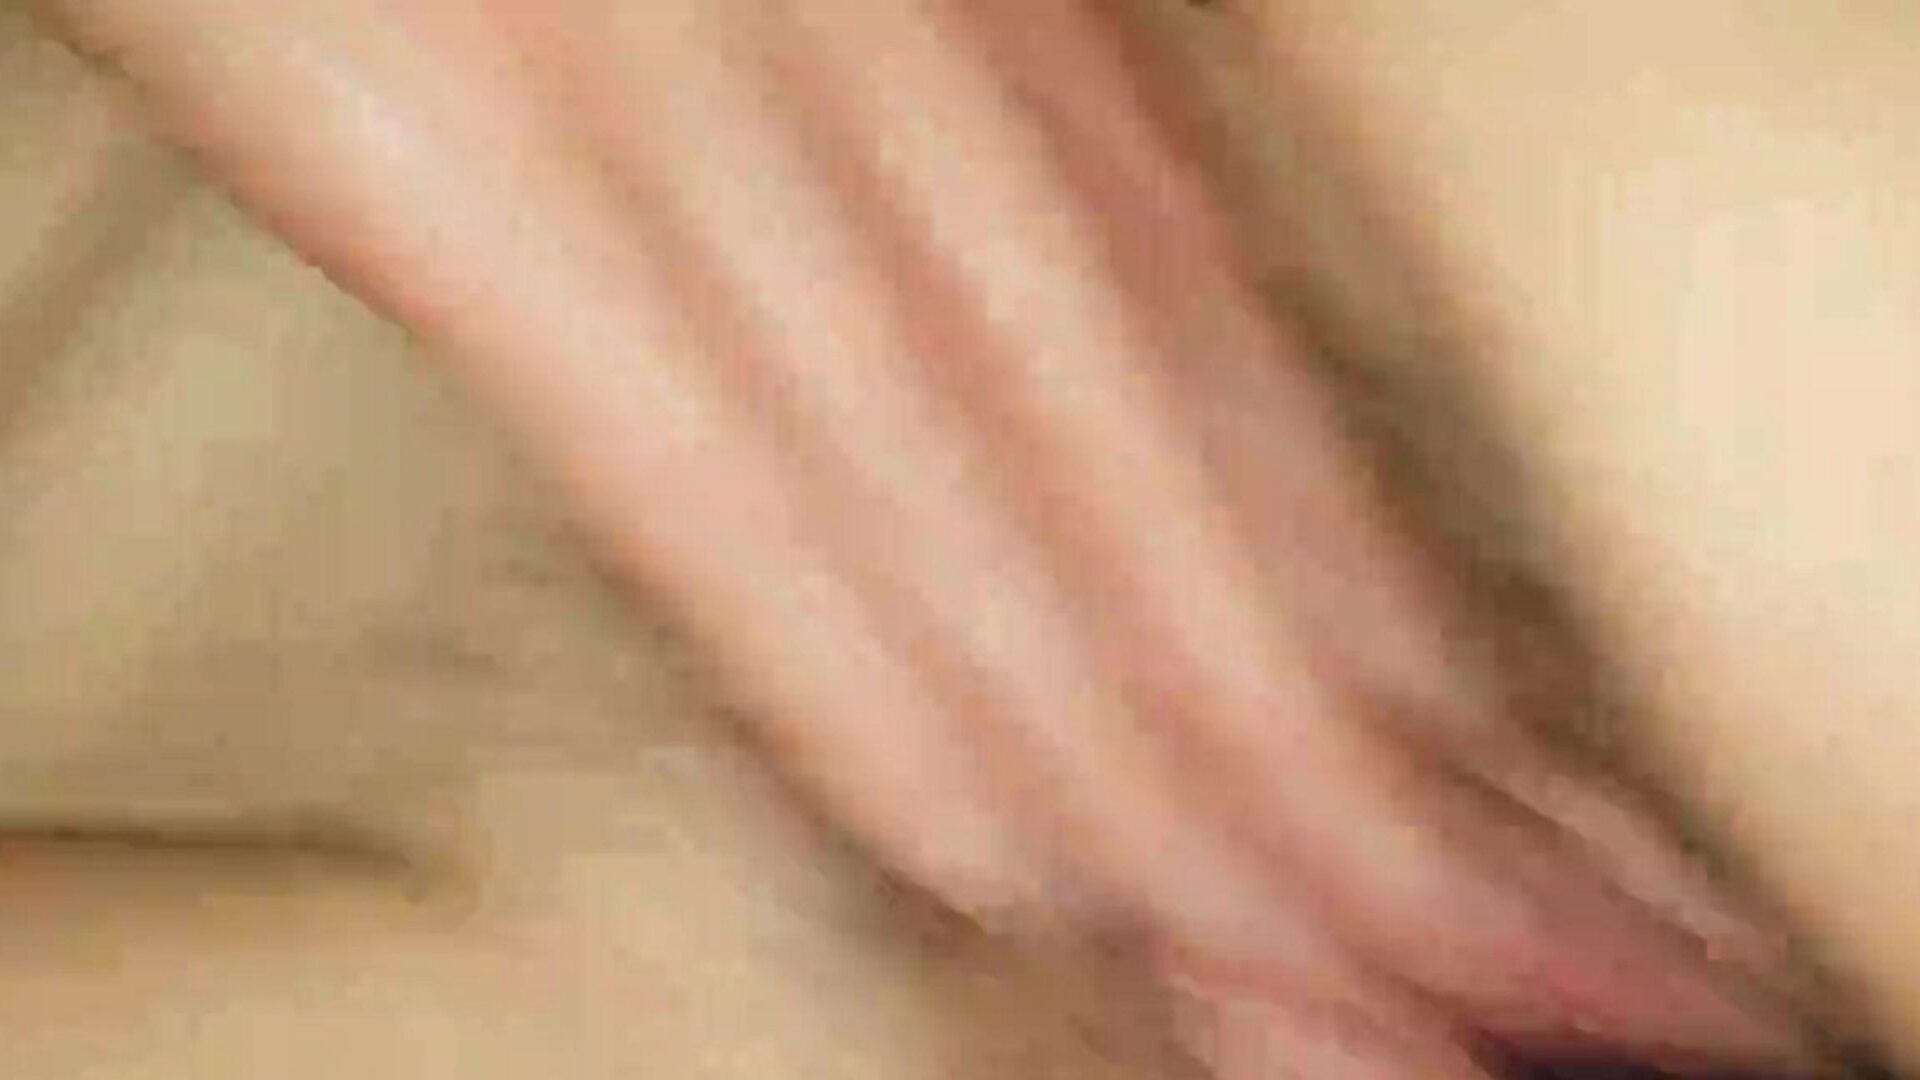 mia moglie si diverte: my pornhub hd porno video 4f - xhamster guarda mia moglie fare un divertente rapporto sessuale clip gratis su xhamster, con la più grande collezione di my pornhub britannico e le mie scene di clip porno hd xxx gratis